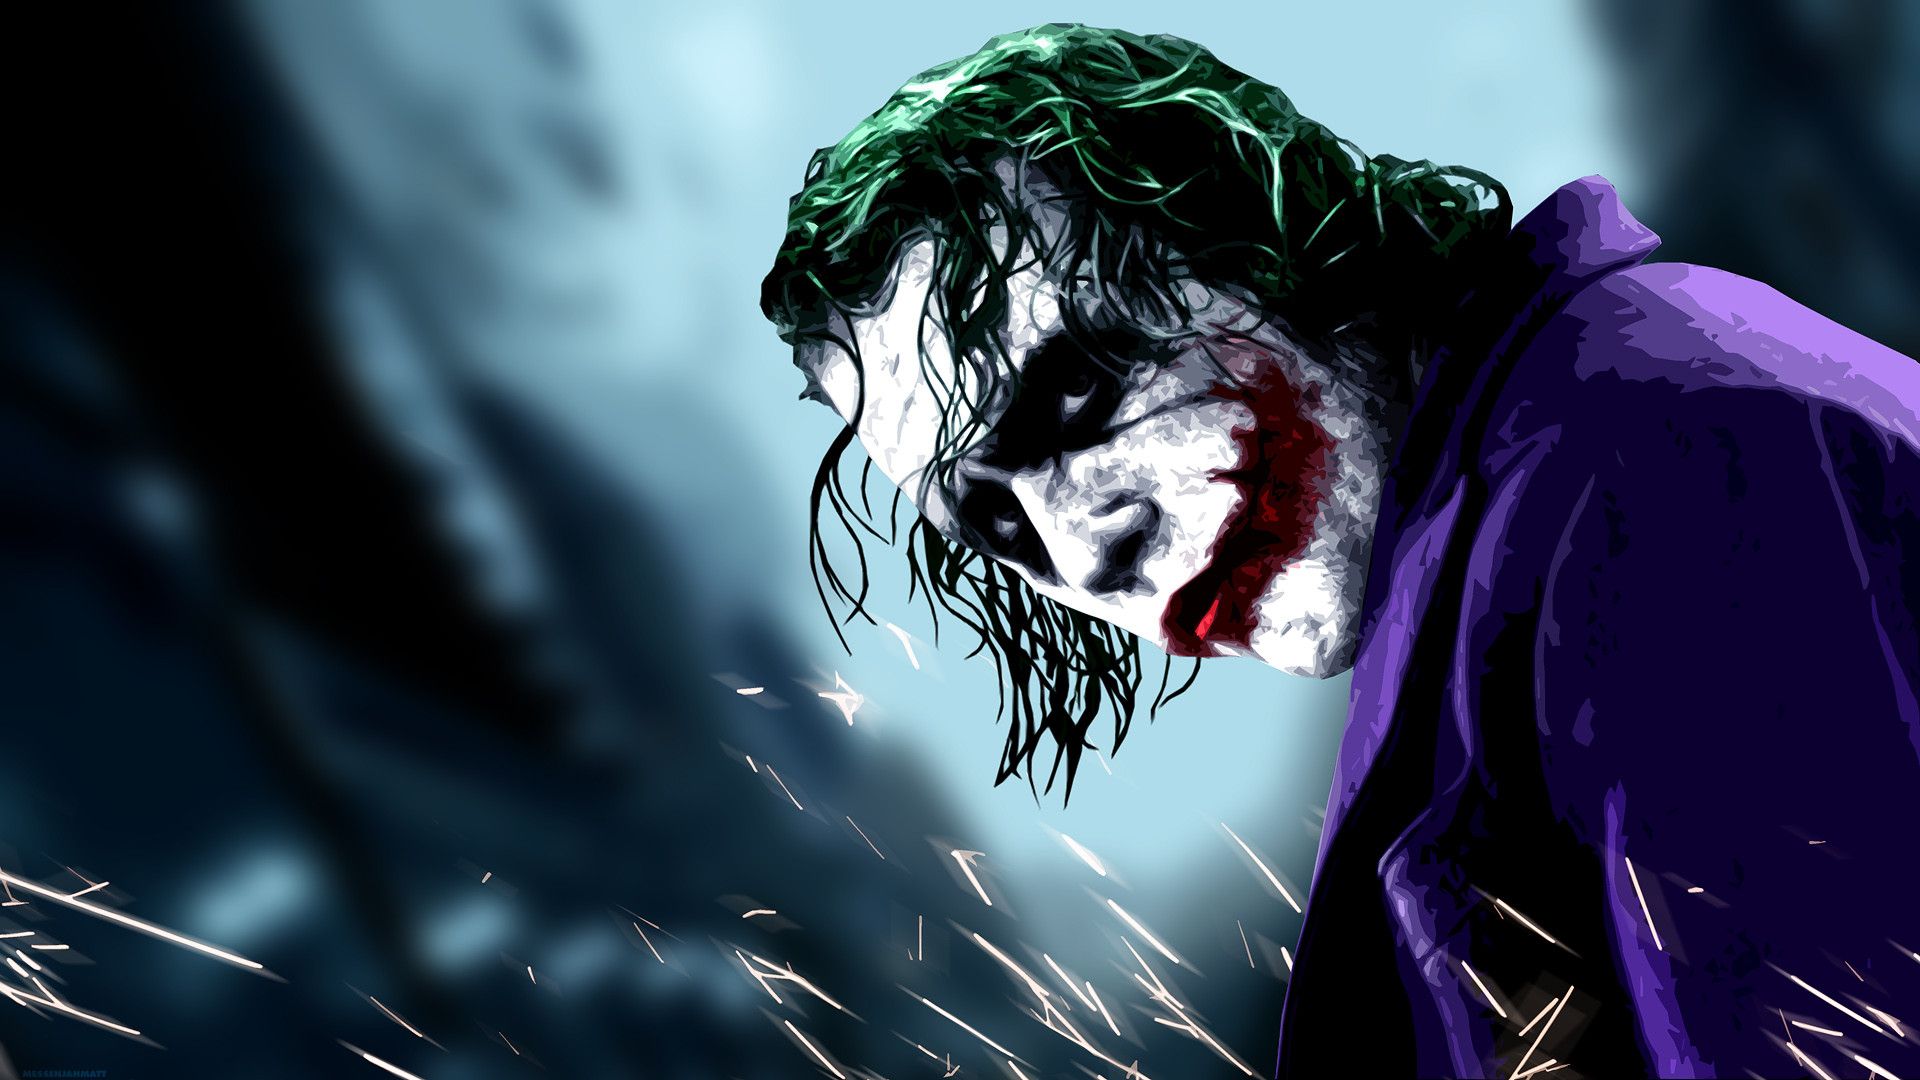 Movie Wallpaper: The Dark Knight Joker Wallpapers High Resolution ...